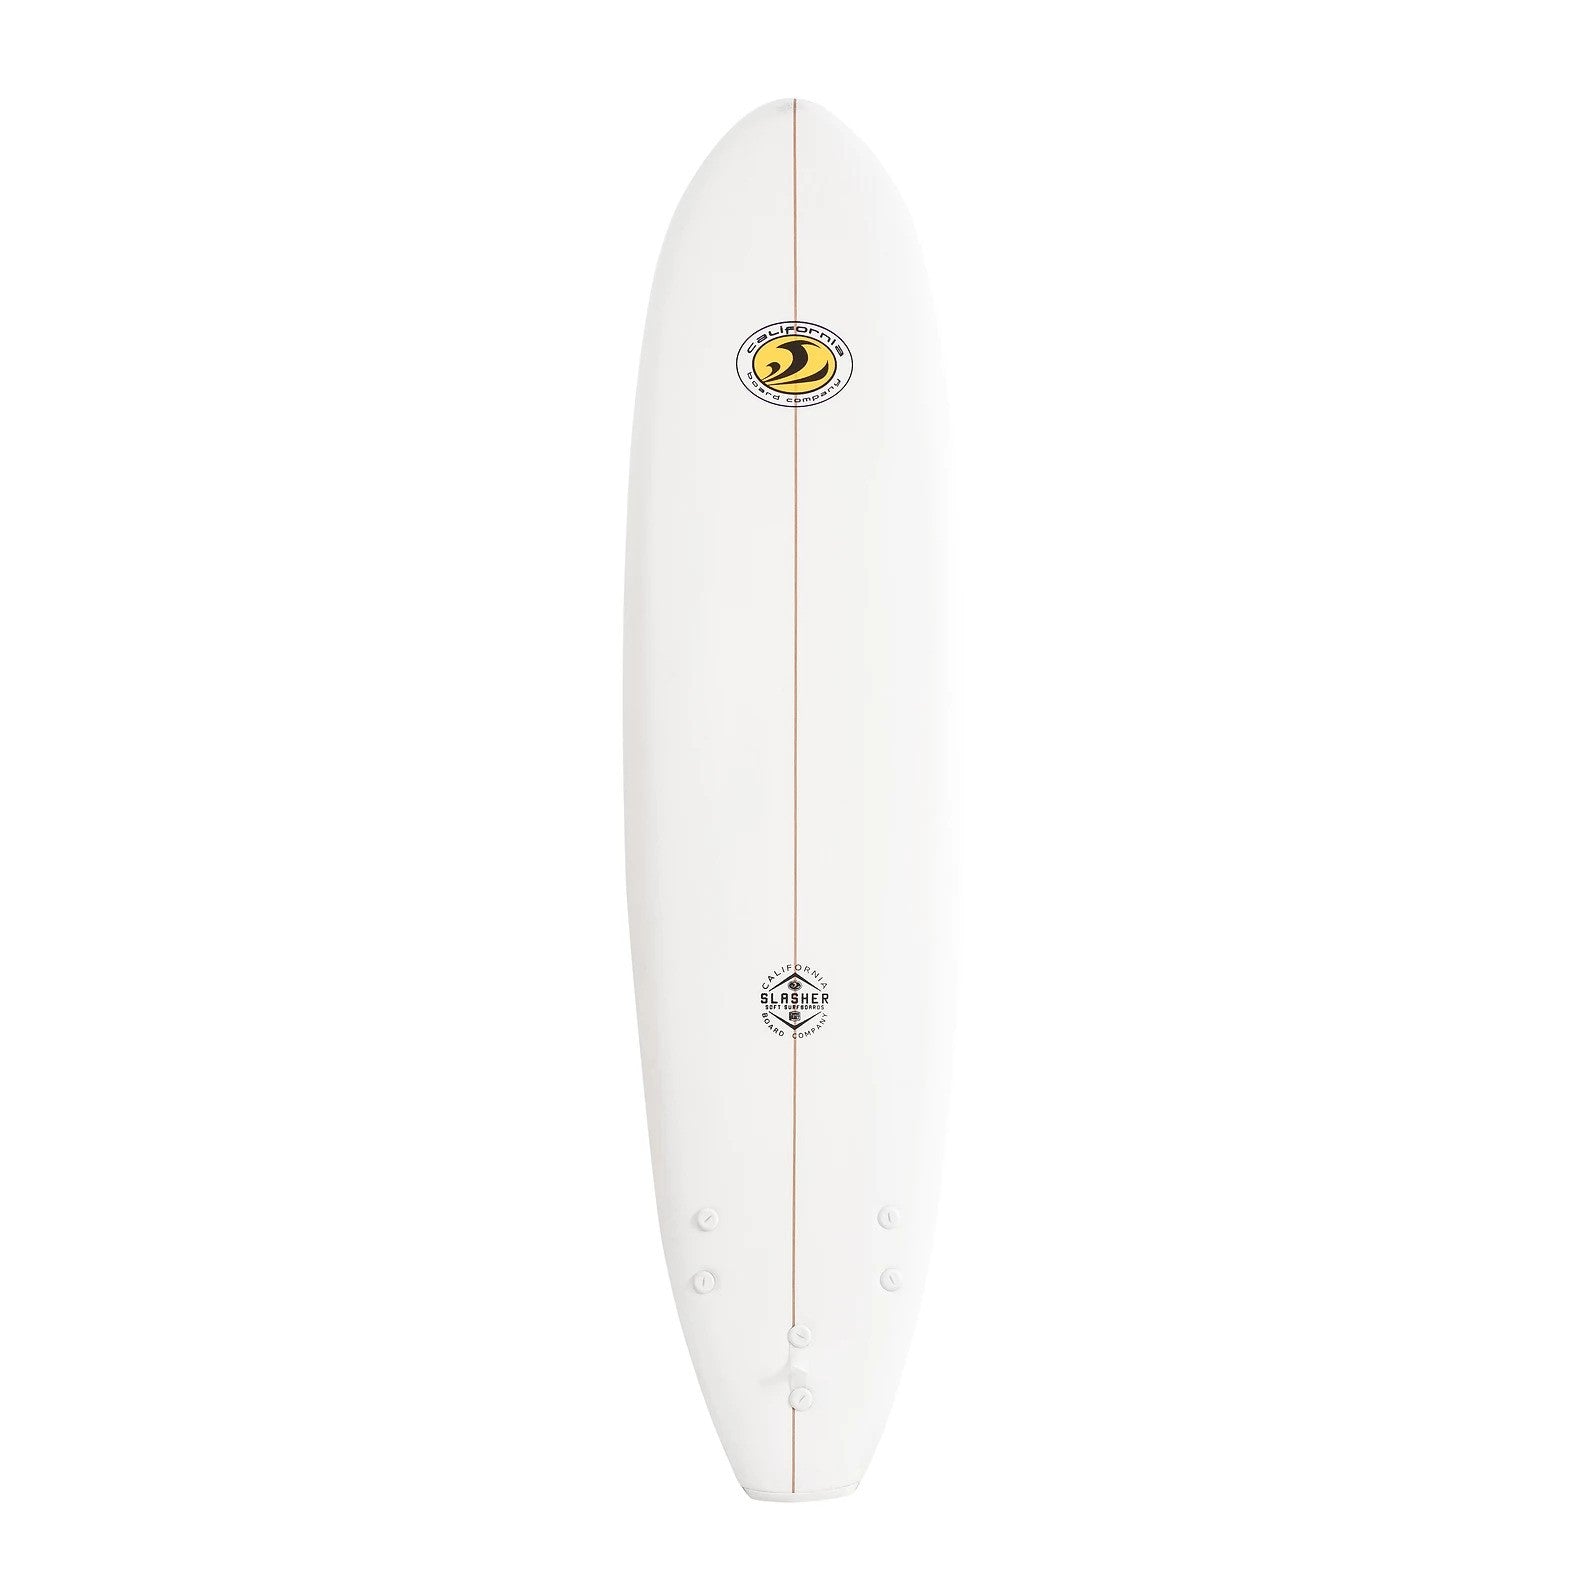 CBC - Foam Surfboard - Softboard Slasher 7'0